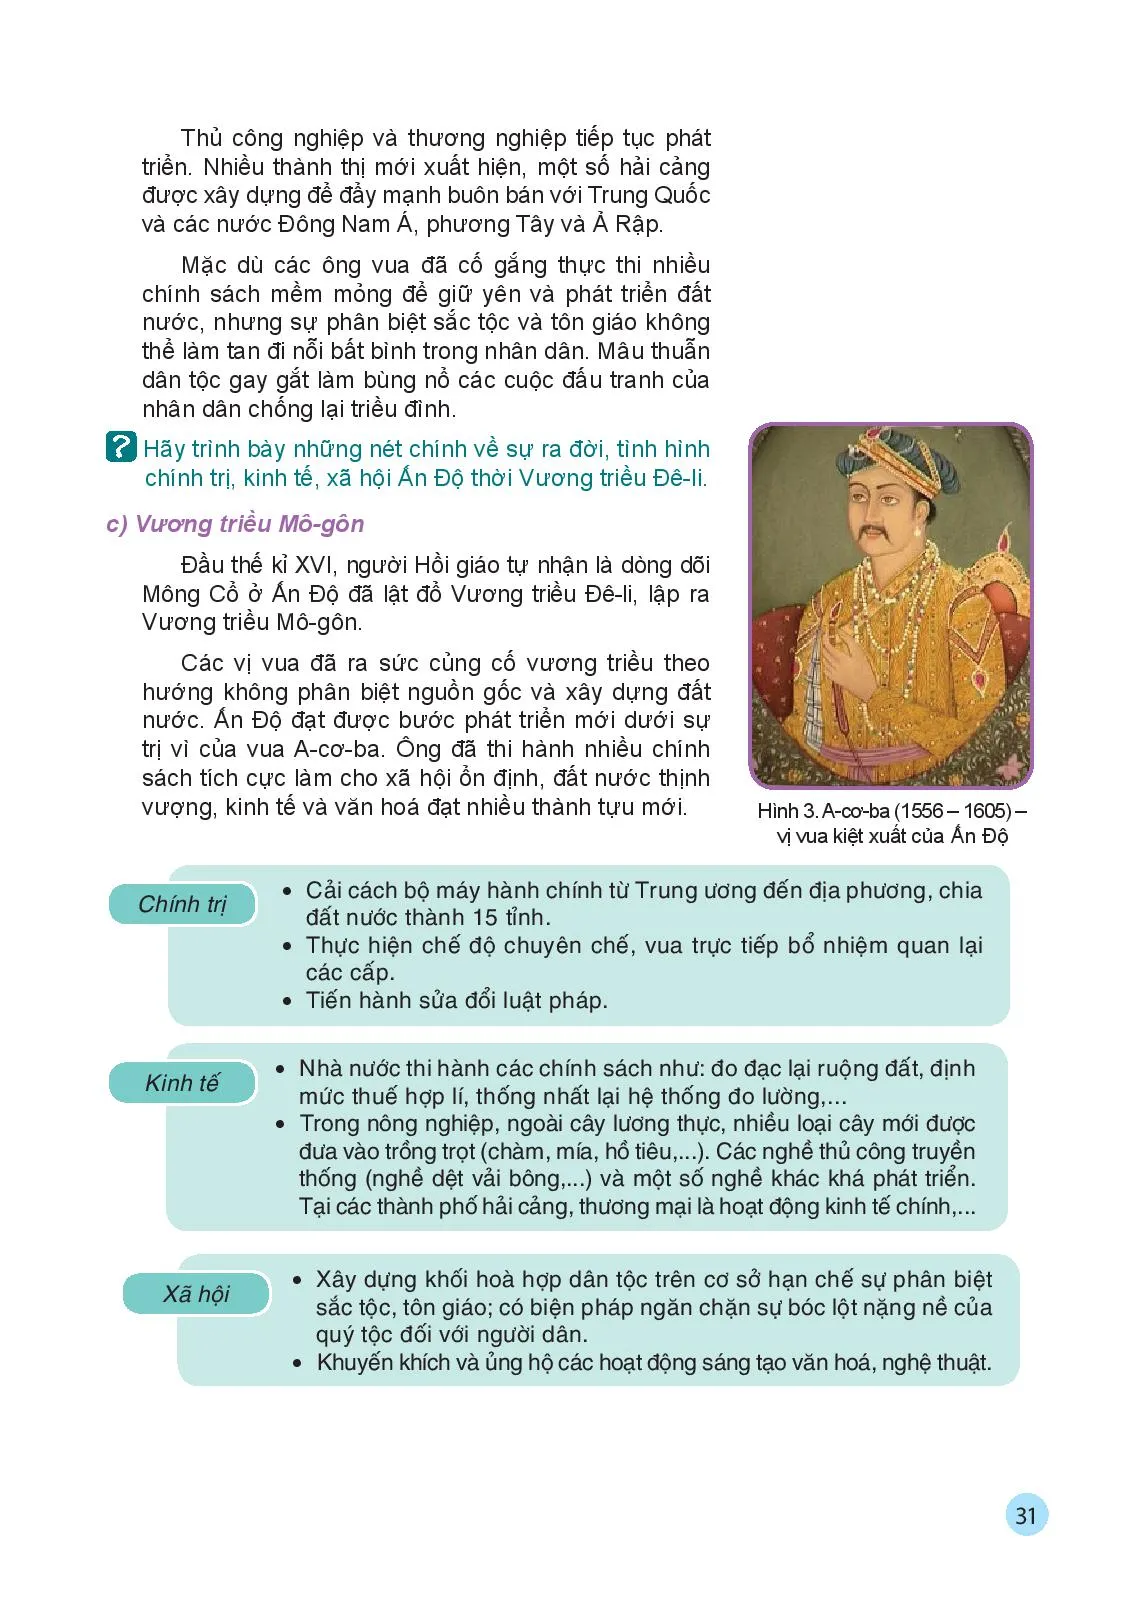 Bài 5 Ấn Độ từ thế kỉ IV đến giữa thế kỉ XIX